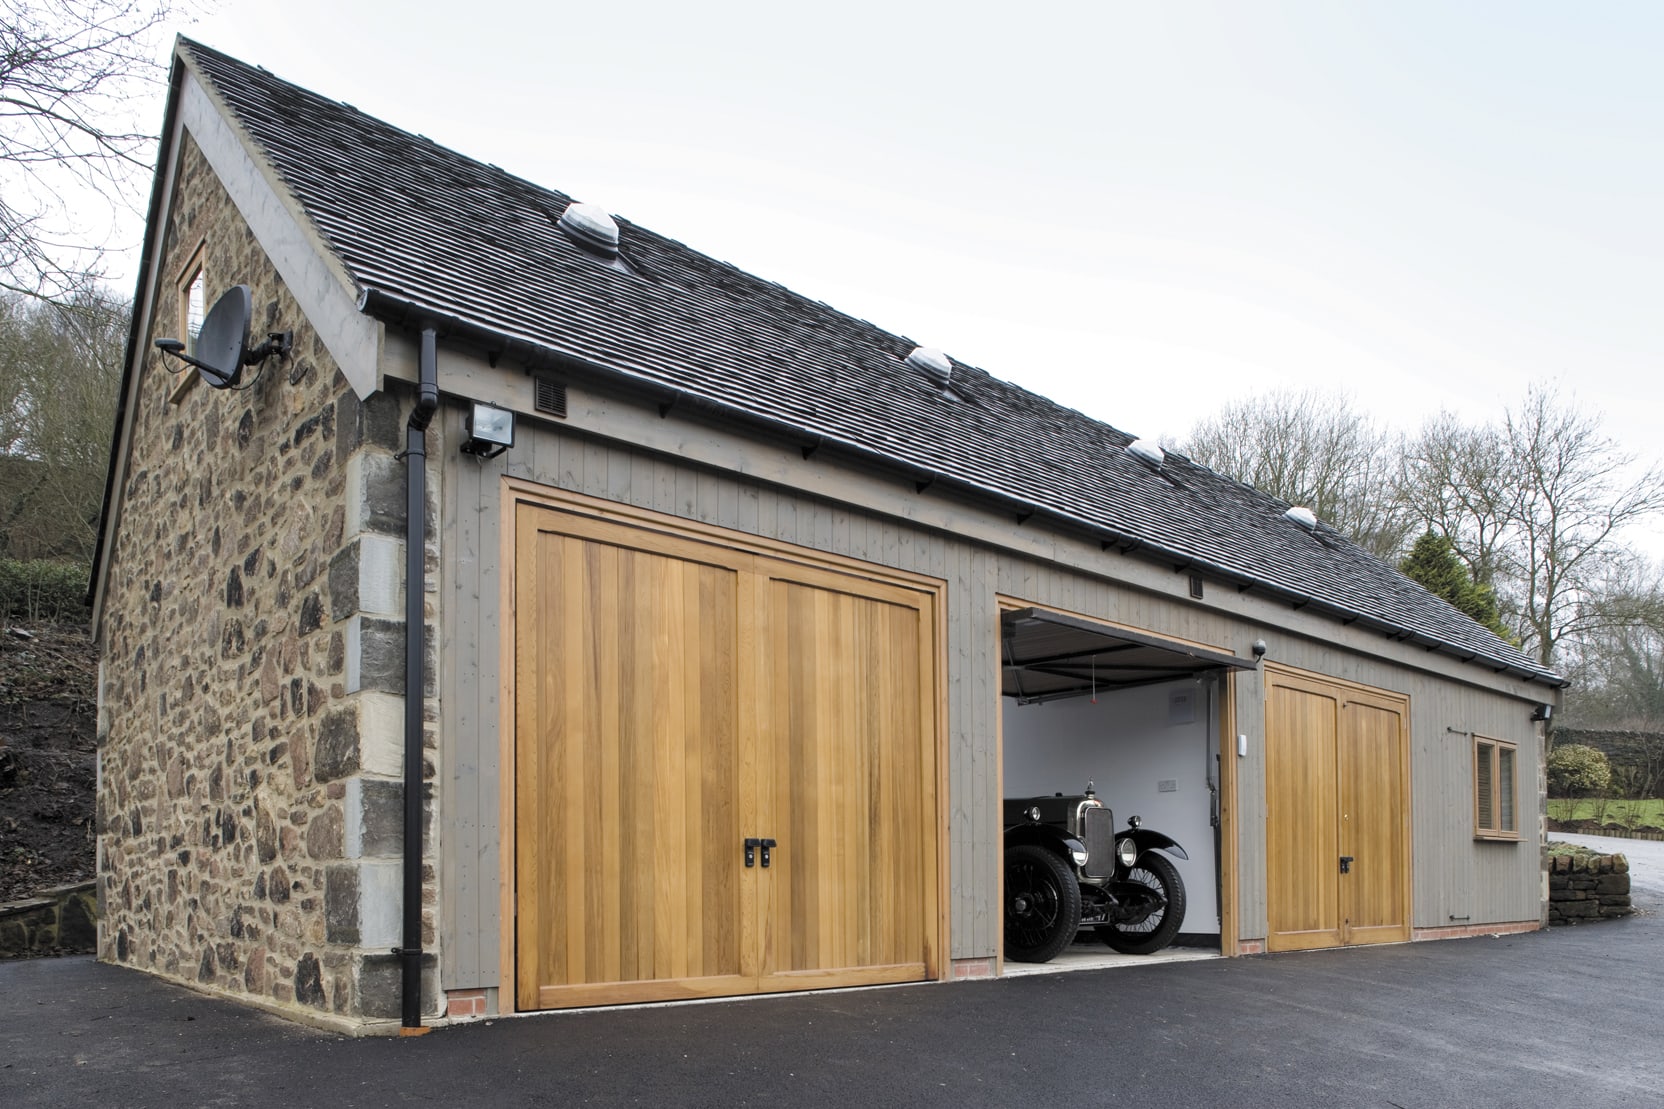 Bespoke Timber Garages Scotts Of Thrapston